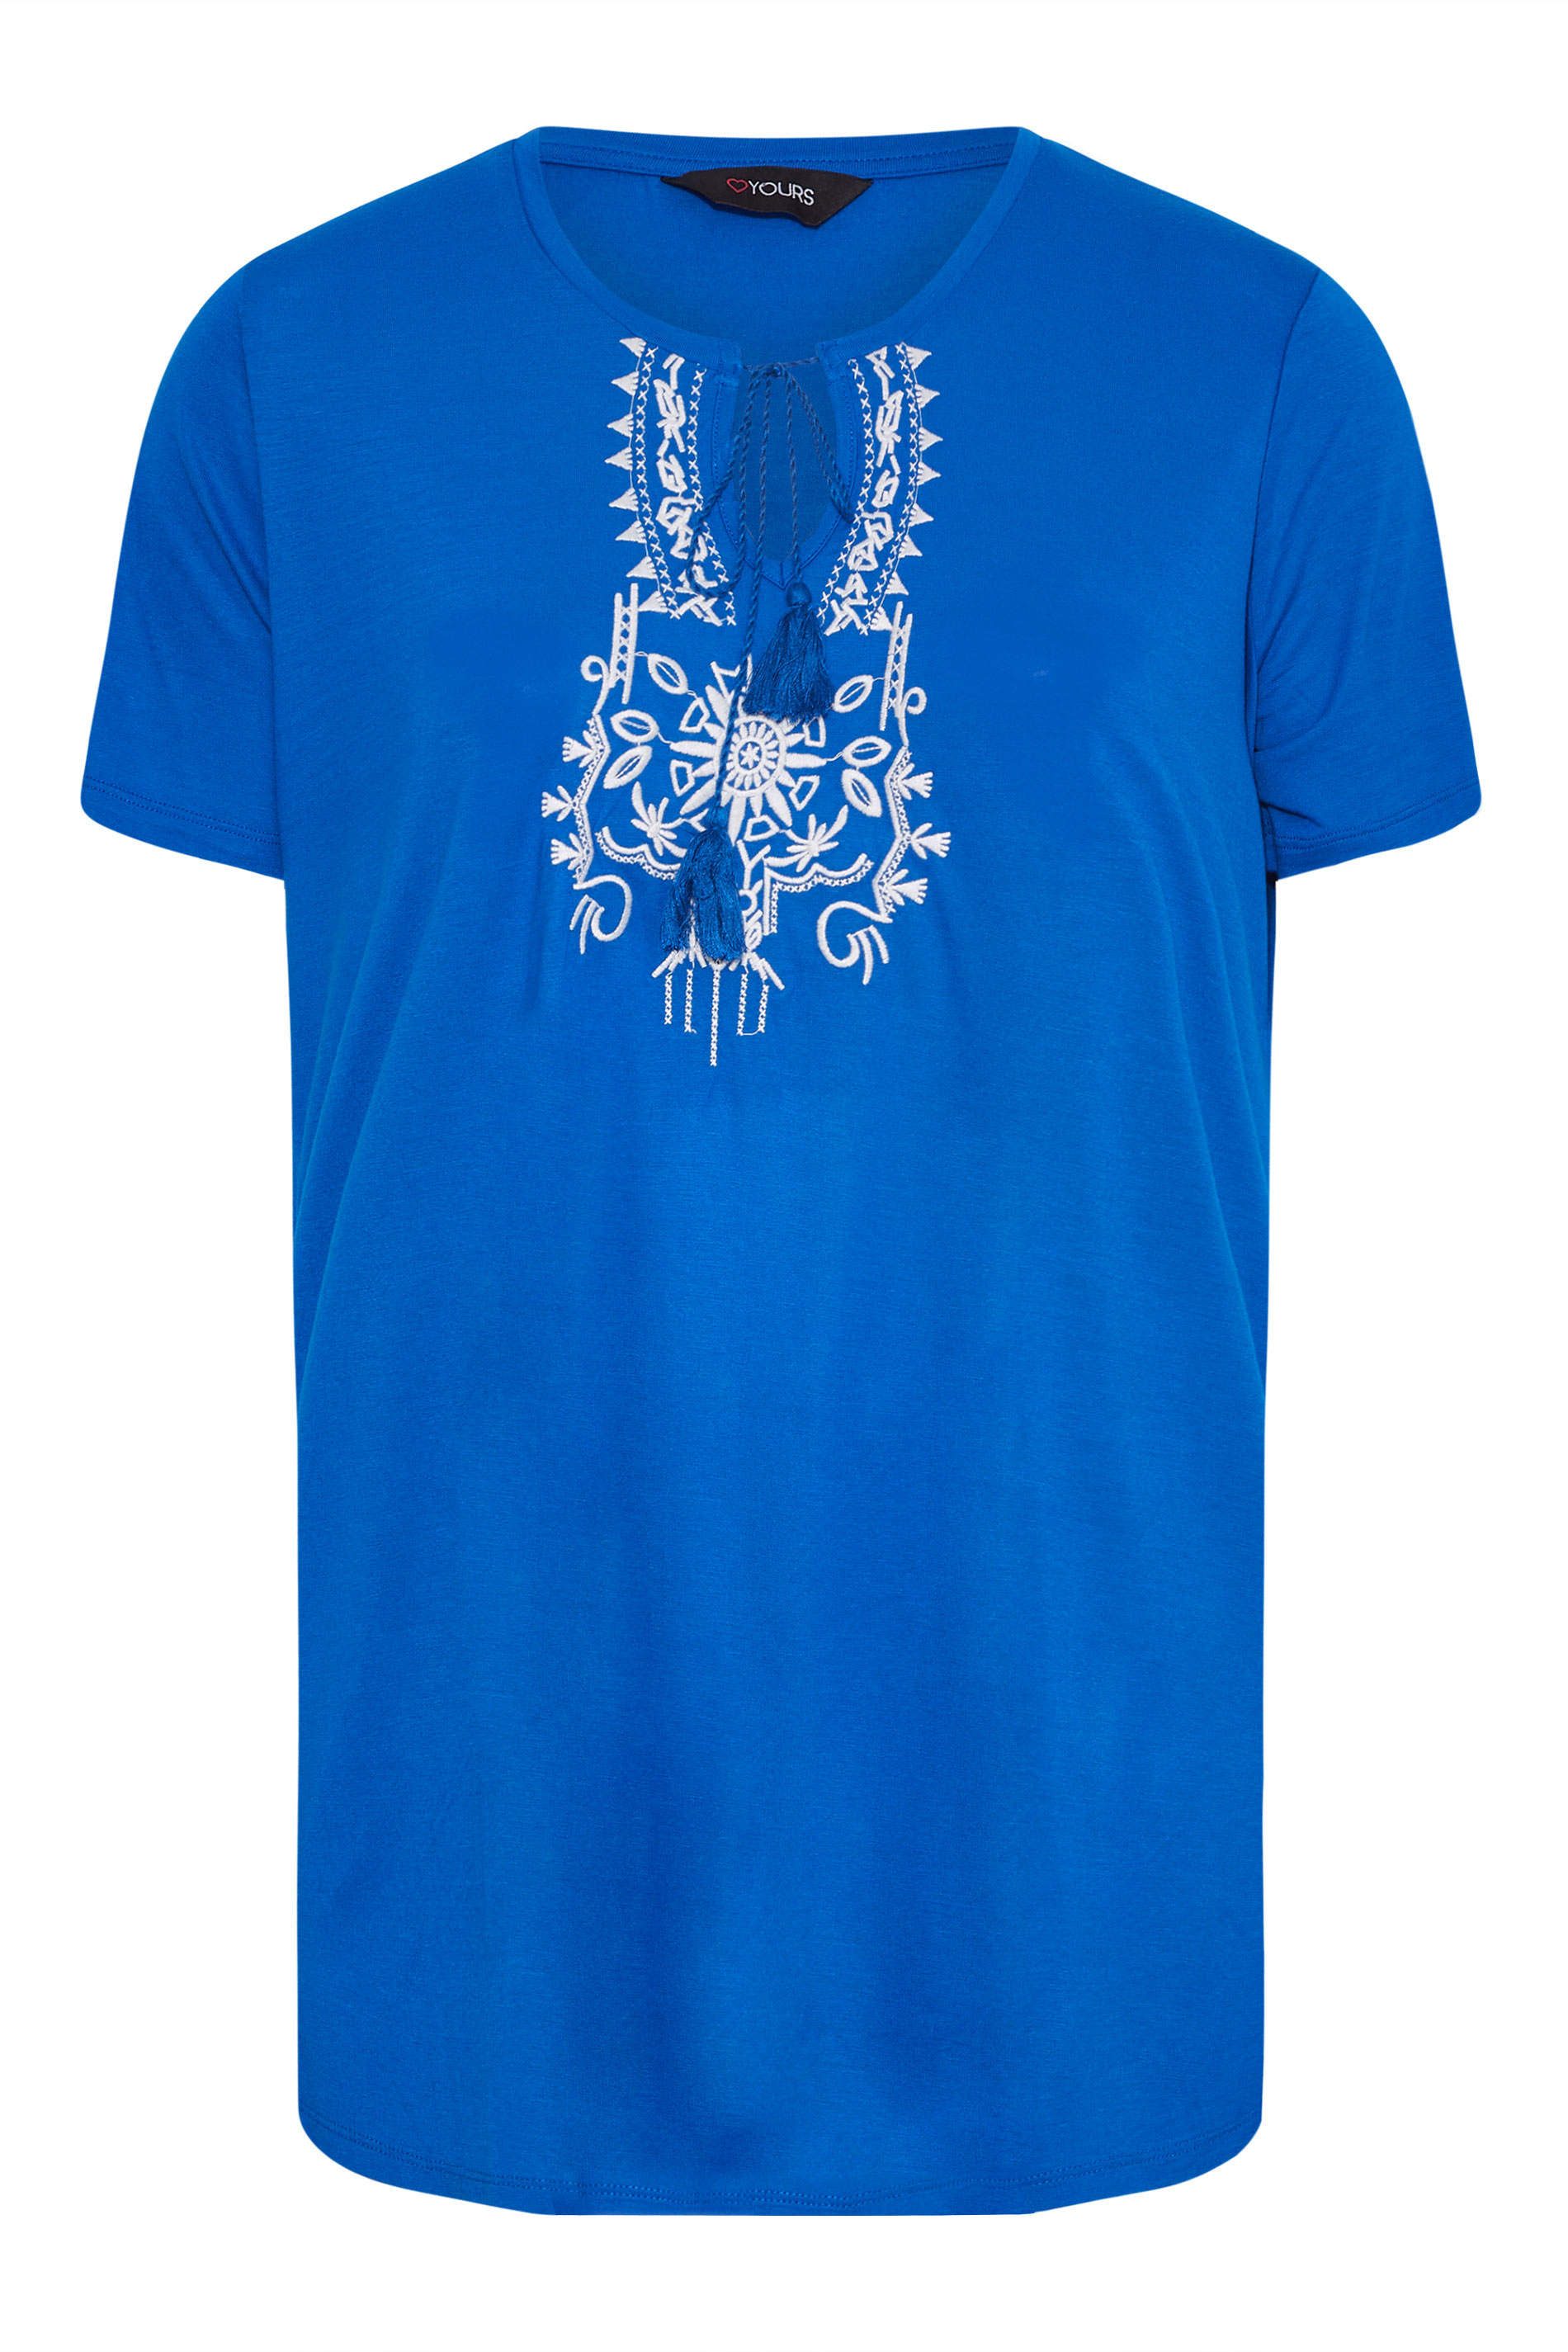 Grande taille  Tops Grande taille  T-Shirts | T-Shirt Bleu Roi Brodé Aztèque à Ficelle - JK28205